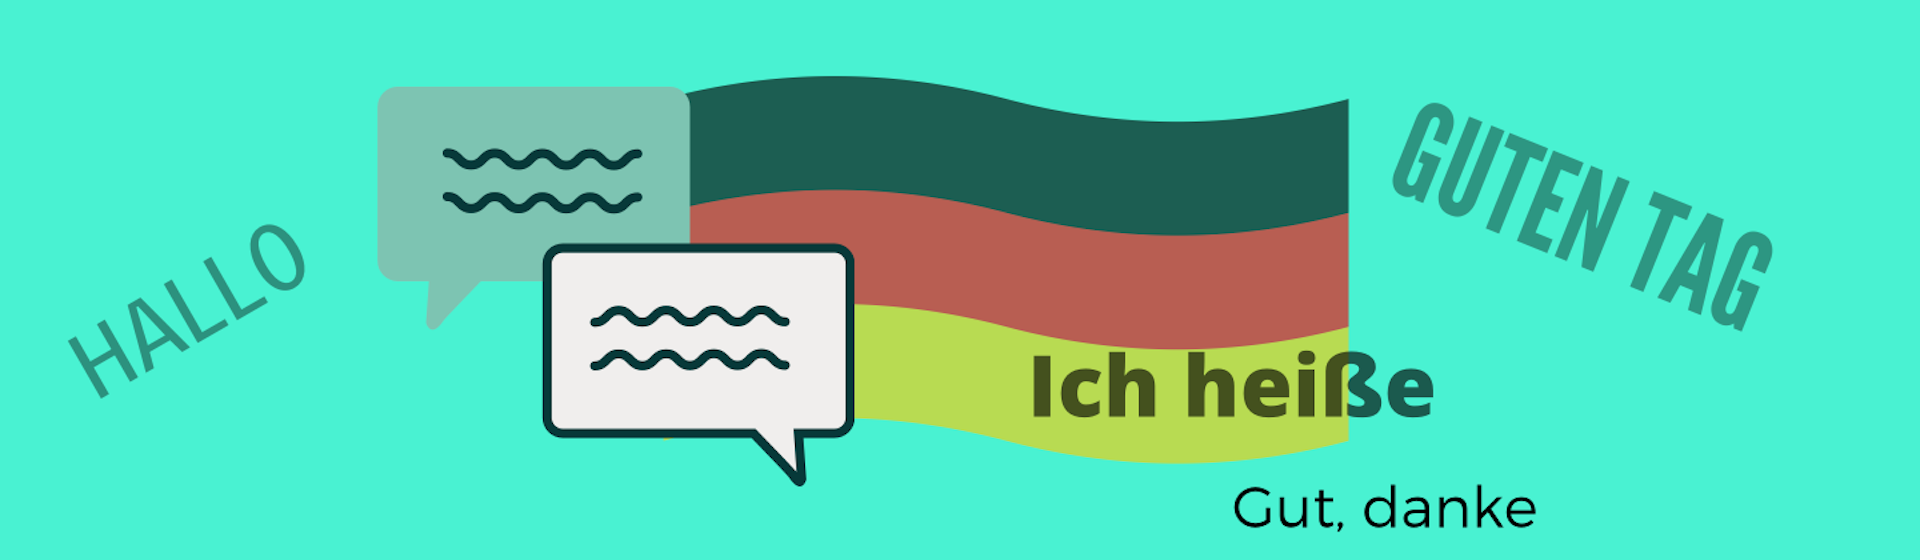 Las 10 mejores apps para aprender Alemán que no son Duolingo